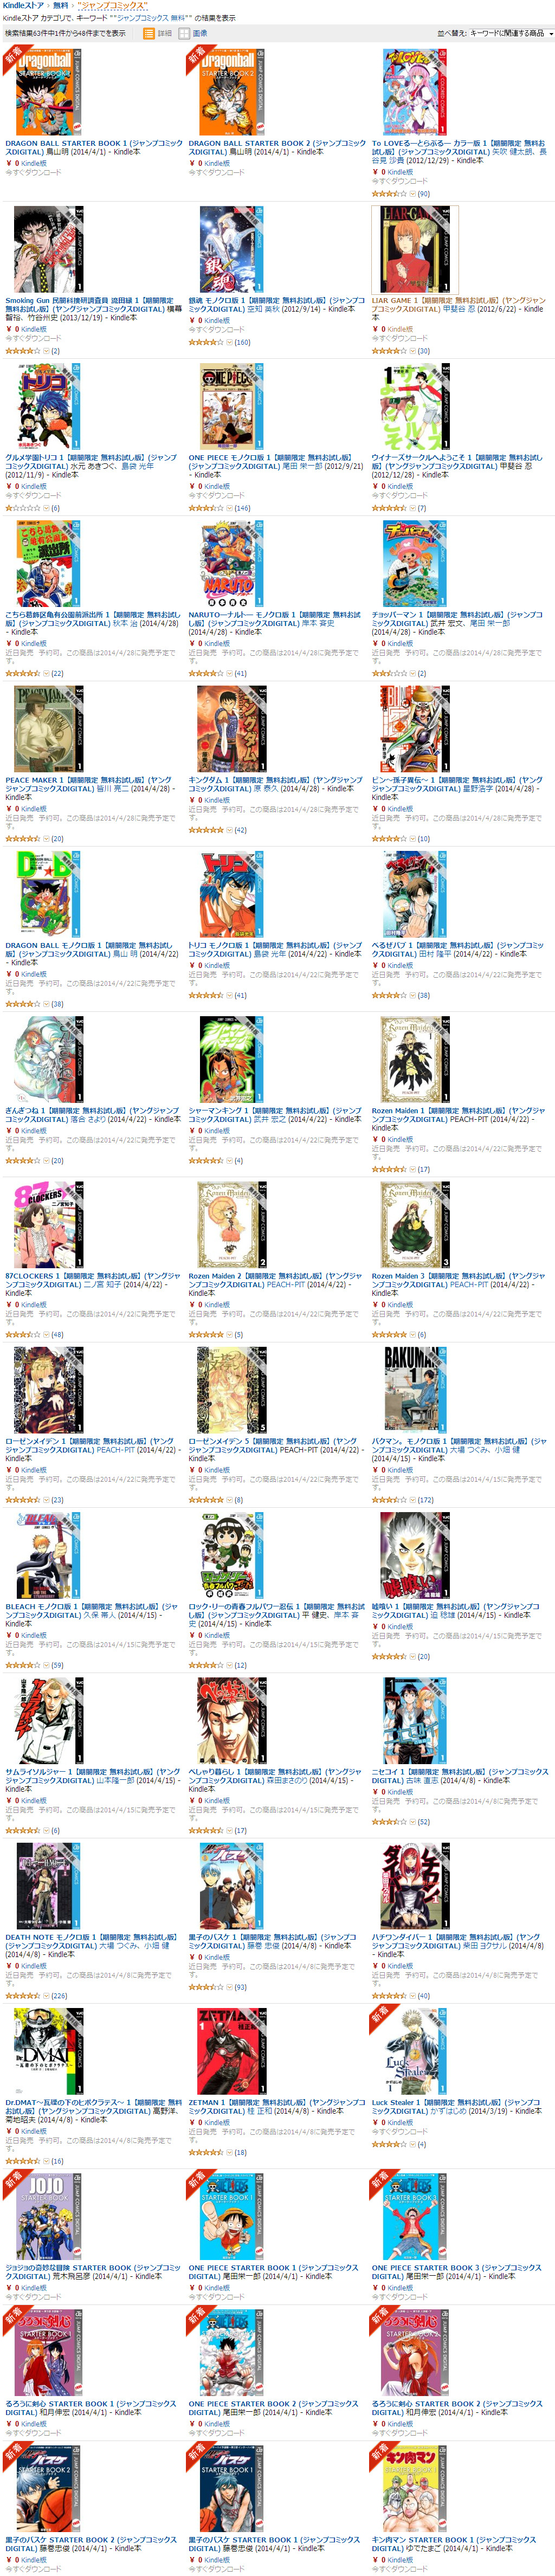 Amazon.co.jp  ジャンプコミックス  Kindleストア.jpg